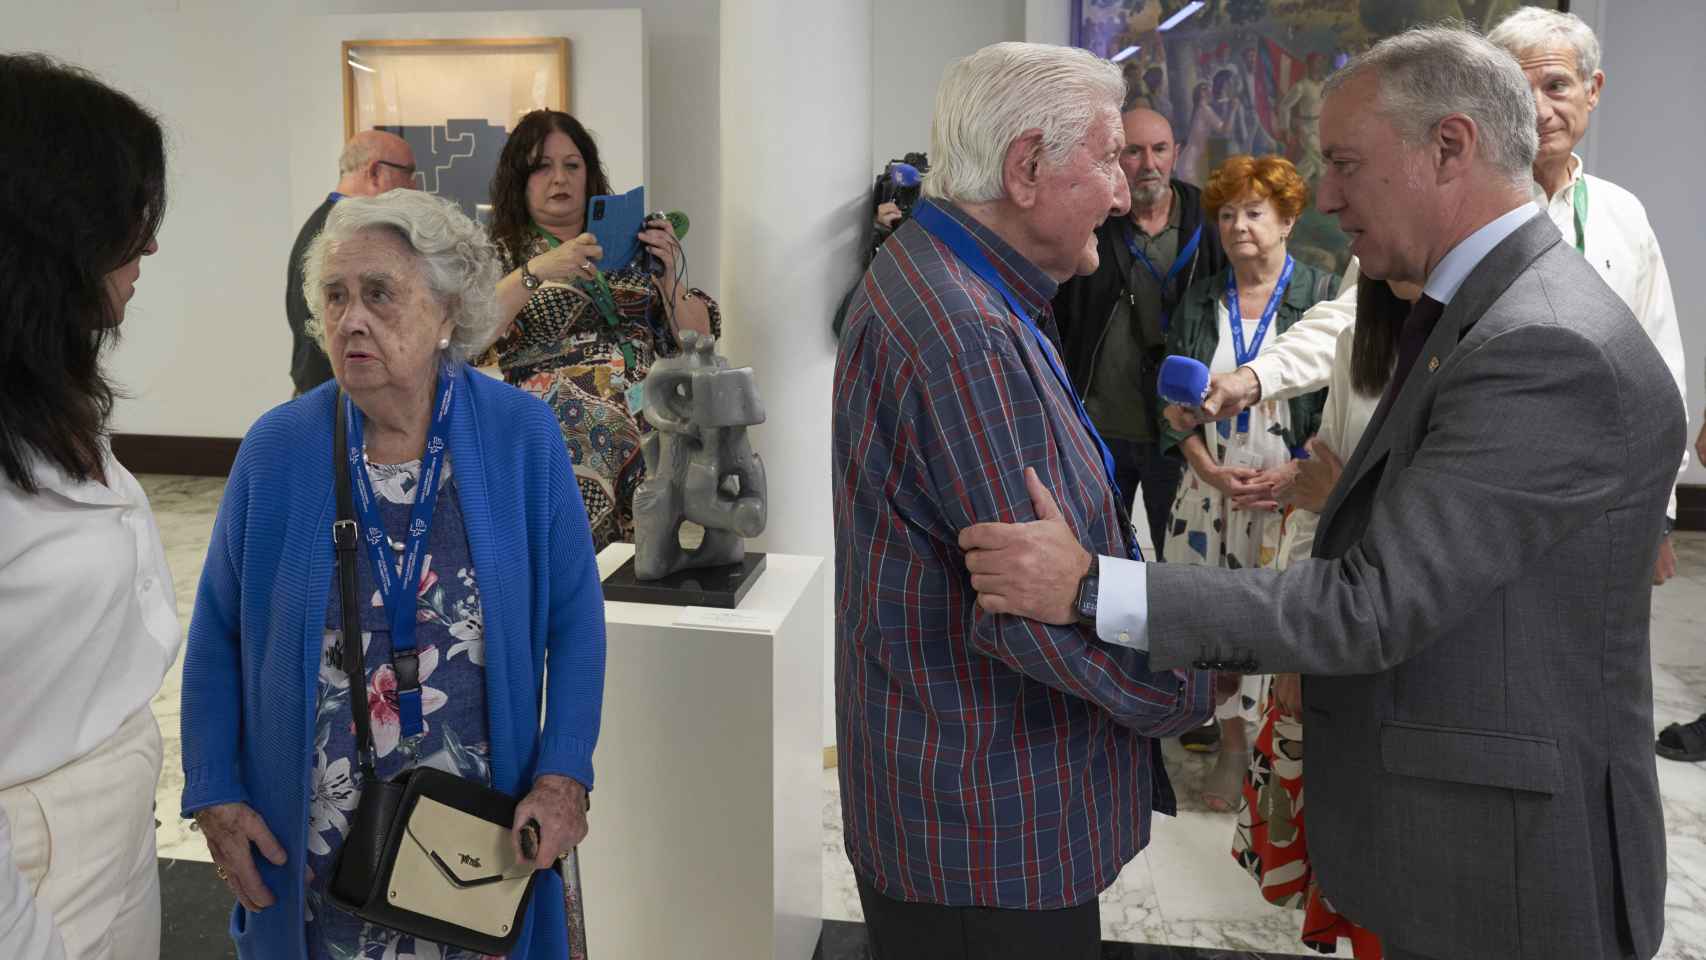 El Lehendakari, Iñigo Urkullu, saluda a Luis Mari Ormazabal, un hombre de 97 años que fue detenido por pertenecer al partido comunista, tras la aprobación de la Ley de Memoria Histórica y Democrática de Euskadi / Adrián Ruíz Hierro - EFE